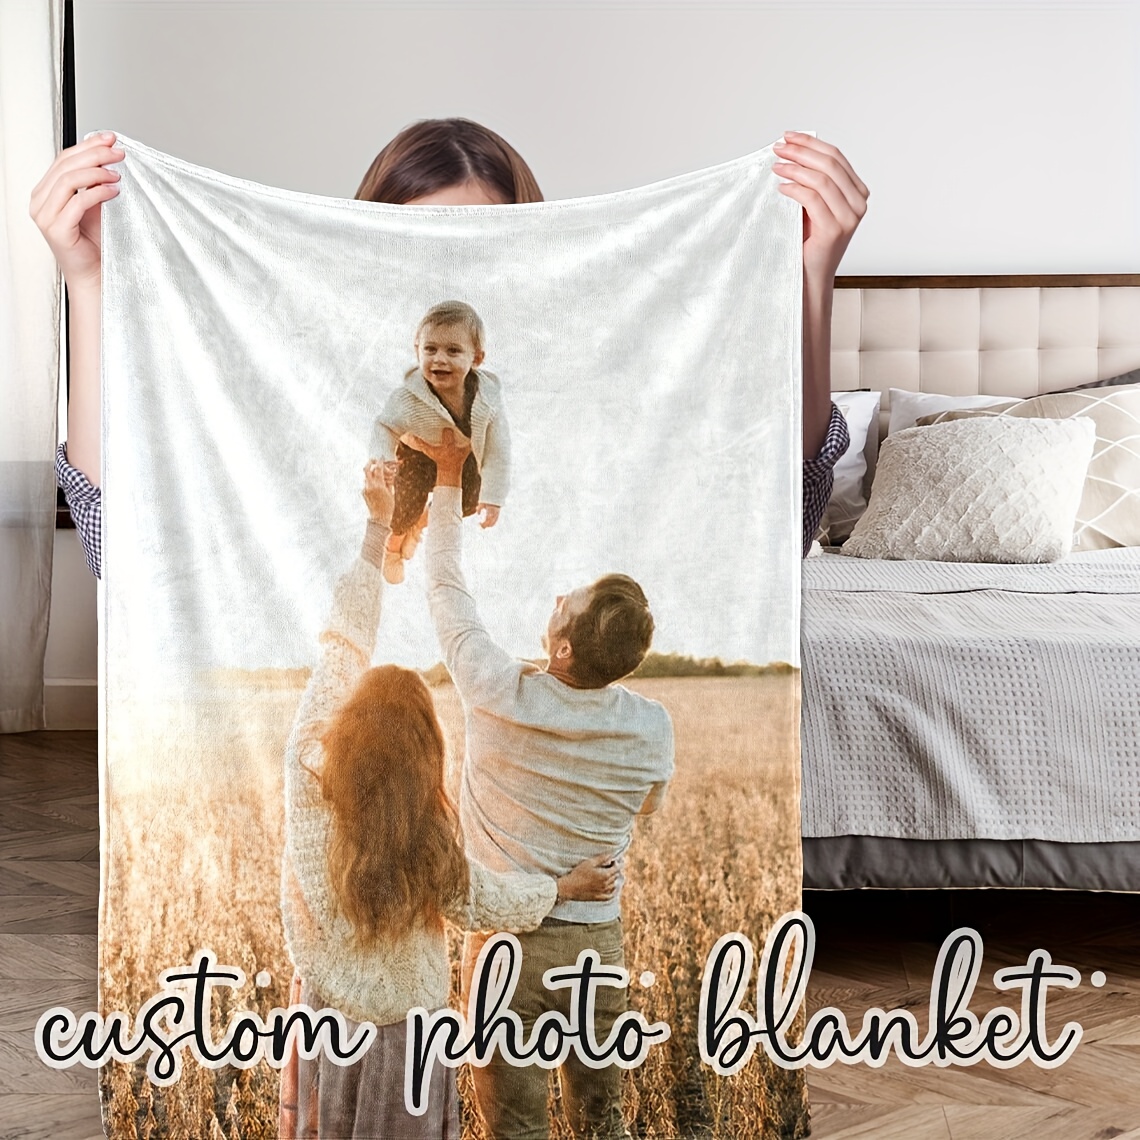 

1pc Custom Blanket Custom Photo Blanket, Family Photo Collage Blanket, Personalized Photo Blanket, Mother's Day Gift, Grandma Blanket, Personalized Family Gift